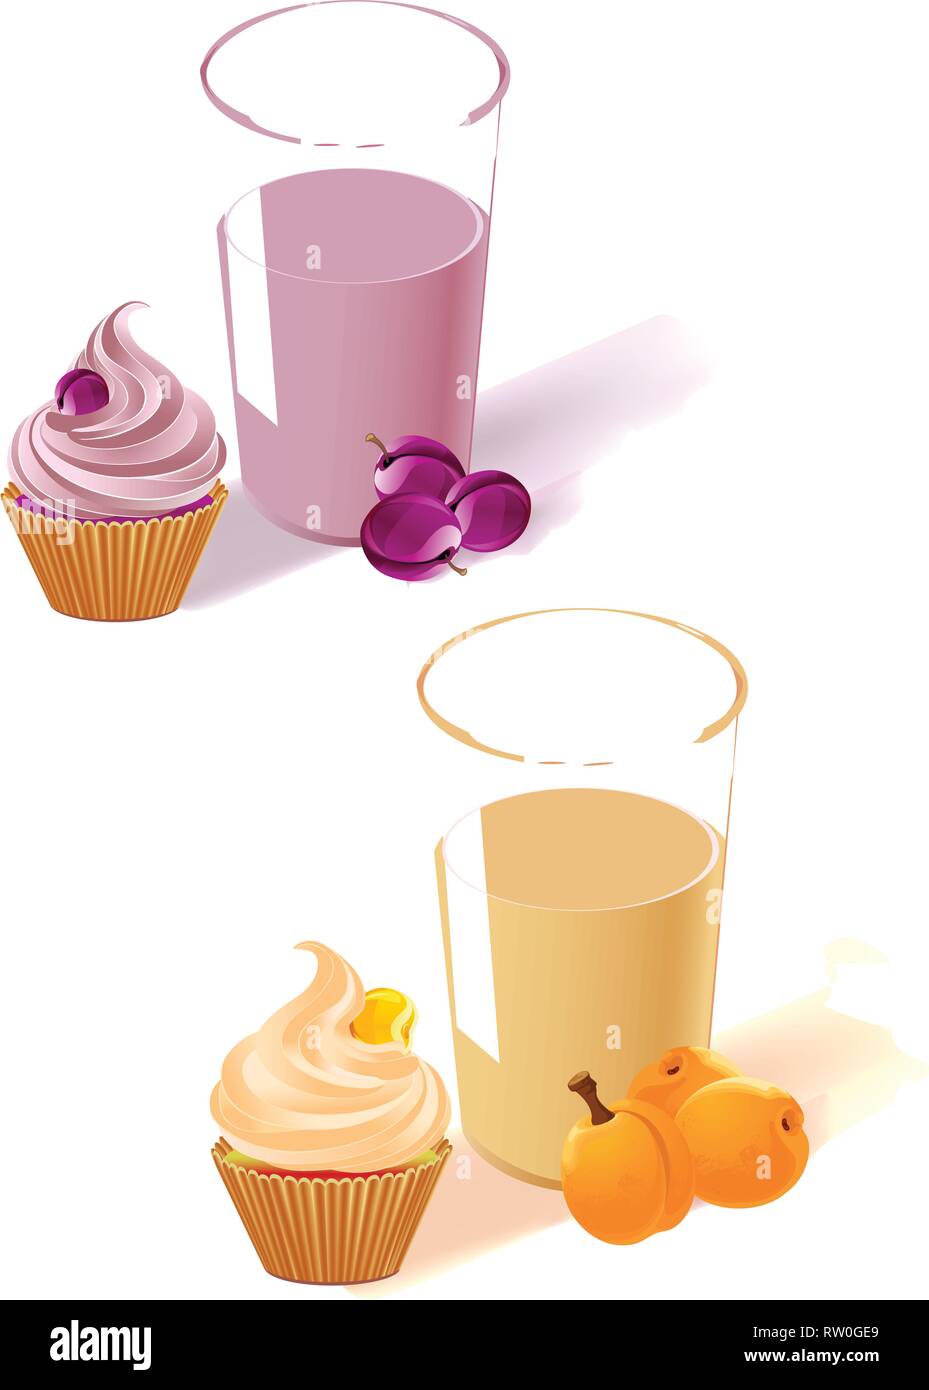 Die Abbildung zeigt die Pflaume und Aprikose Joghurt im Glas, Obst und Kuchen. Auf weißem Hintergrund, auf separaten Ebenen. Stock Vektor